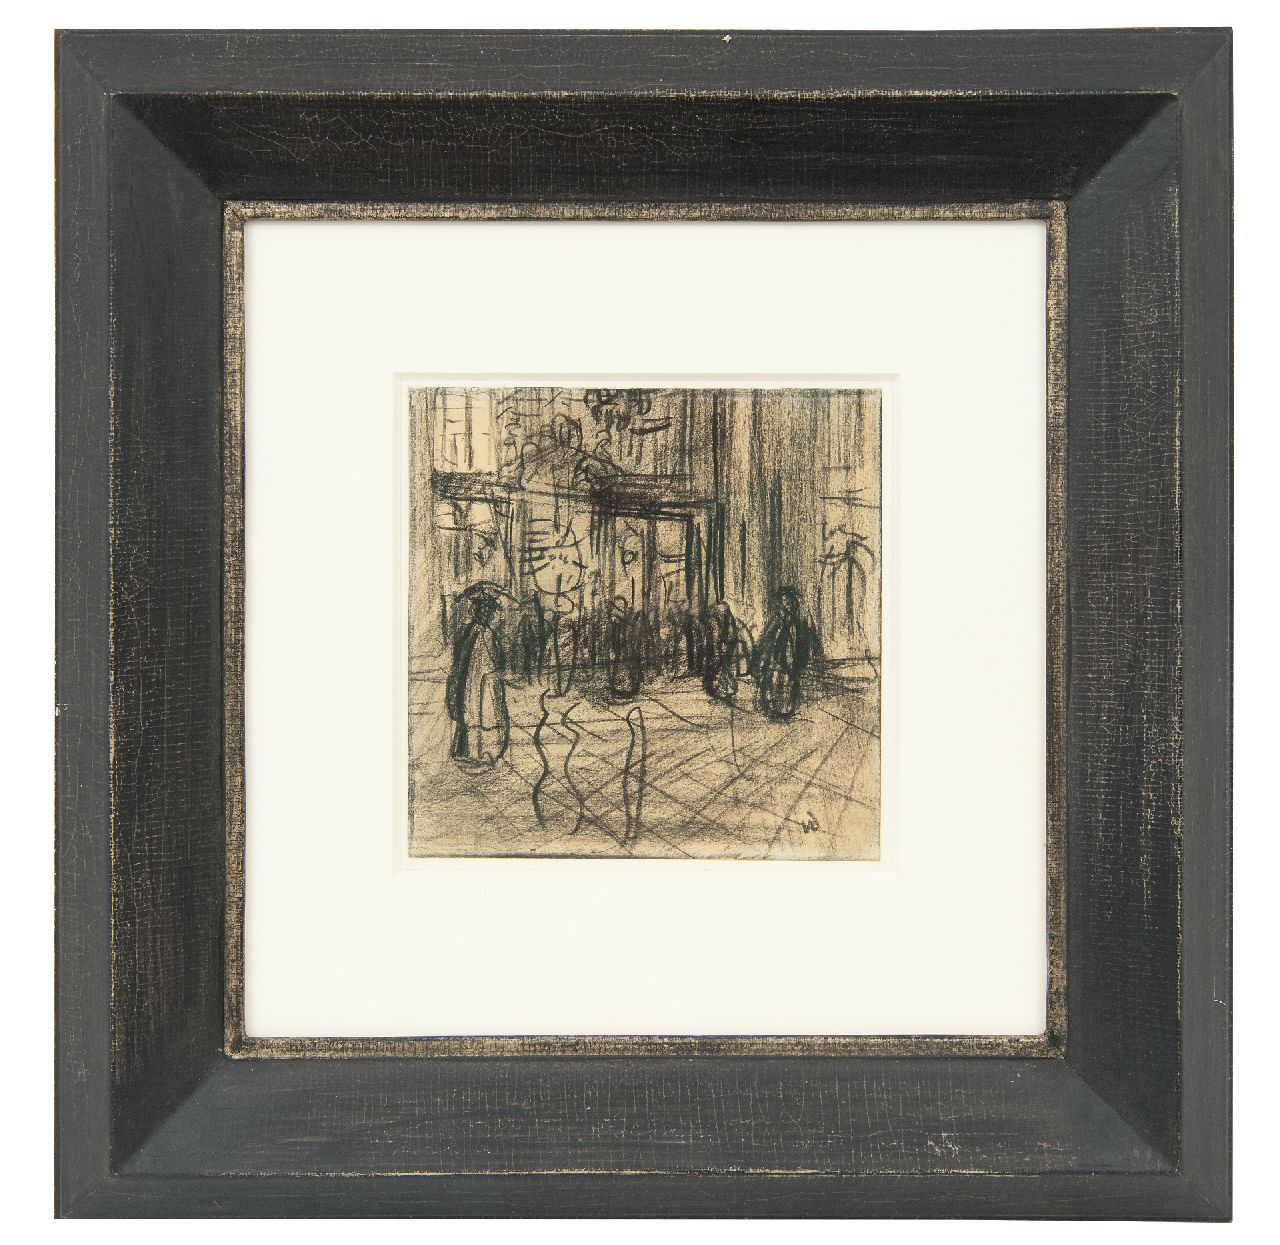 Dongen C.T.M. van | Cornelis Theodorus Maria 'Kees' van Dongen | Aquarellen en tekeningen te koop aangeboden | Figuren in een winkelstraat, houtskool op papier 12,4 x 12,4 cm, gesigneerd rechtsonder met initialen